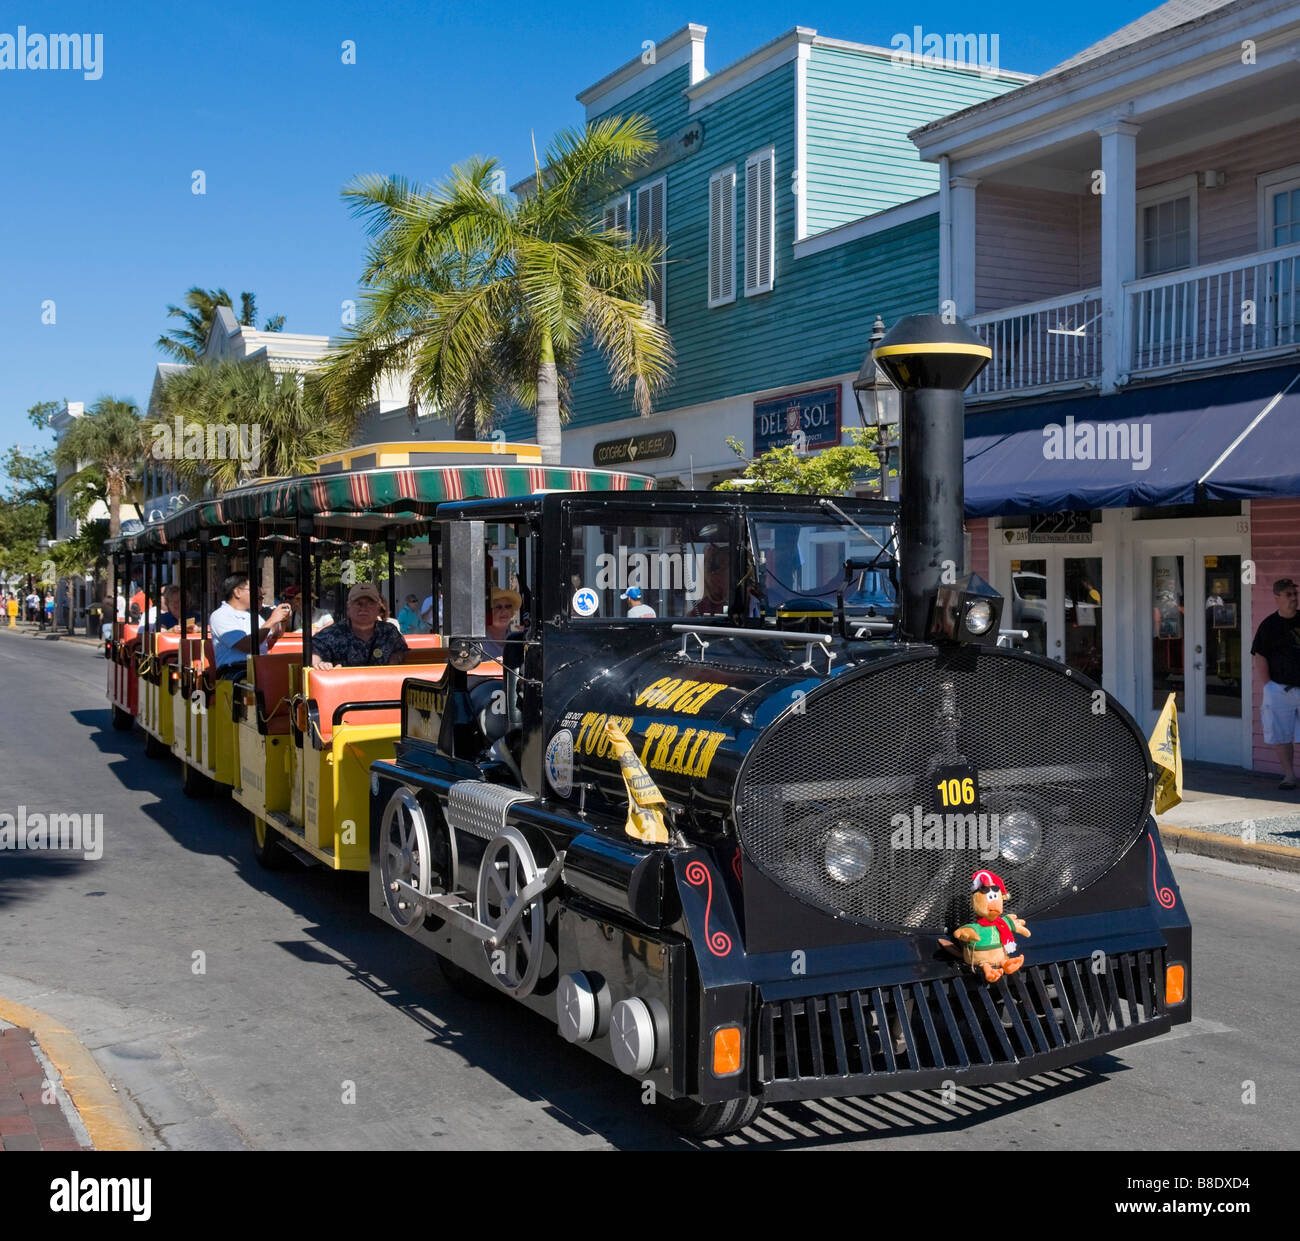 Train Touristique Conques sur Duval Street, Old Town, Key West, Florida Keys, USA Banque D'Images